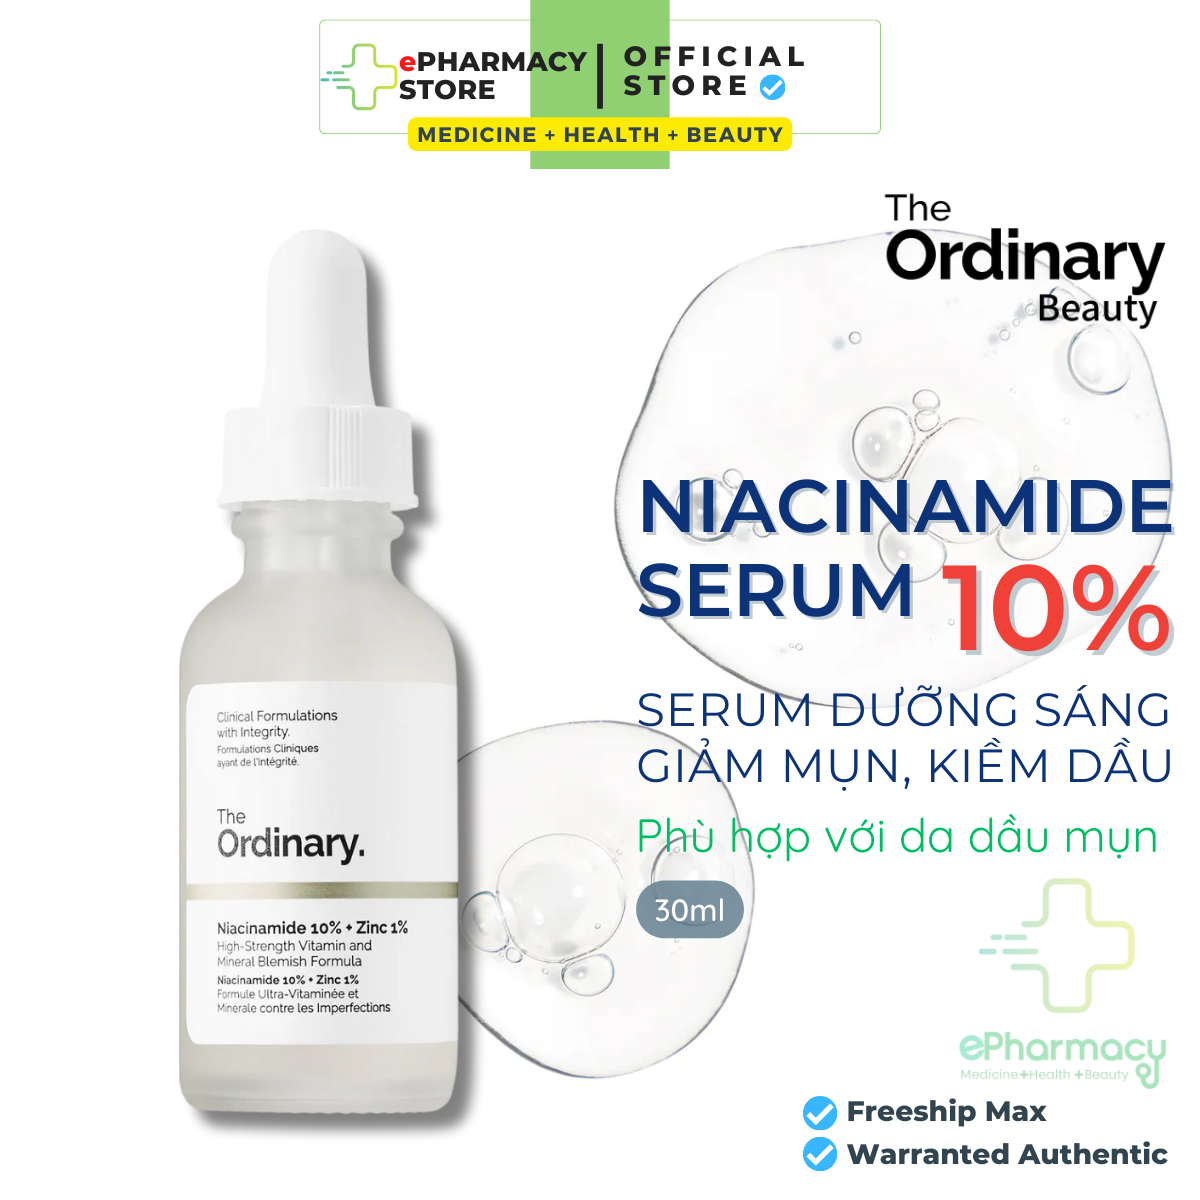 Serum Niacinamide 10% + Zinc 1% The Ordinary - Tinh Chất The Ordinary kiềm dầu giảm mụn giảm thâm 30ml